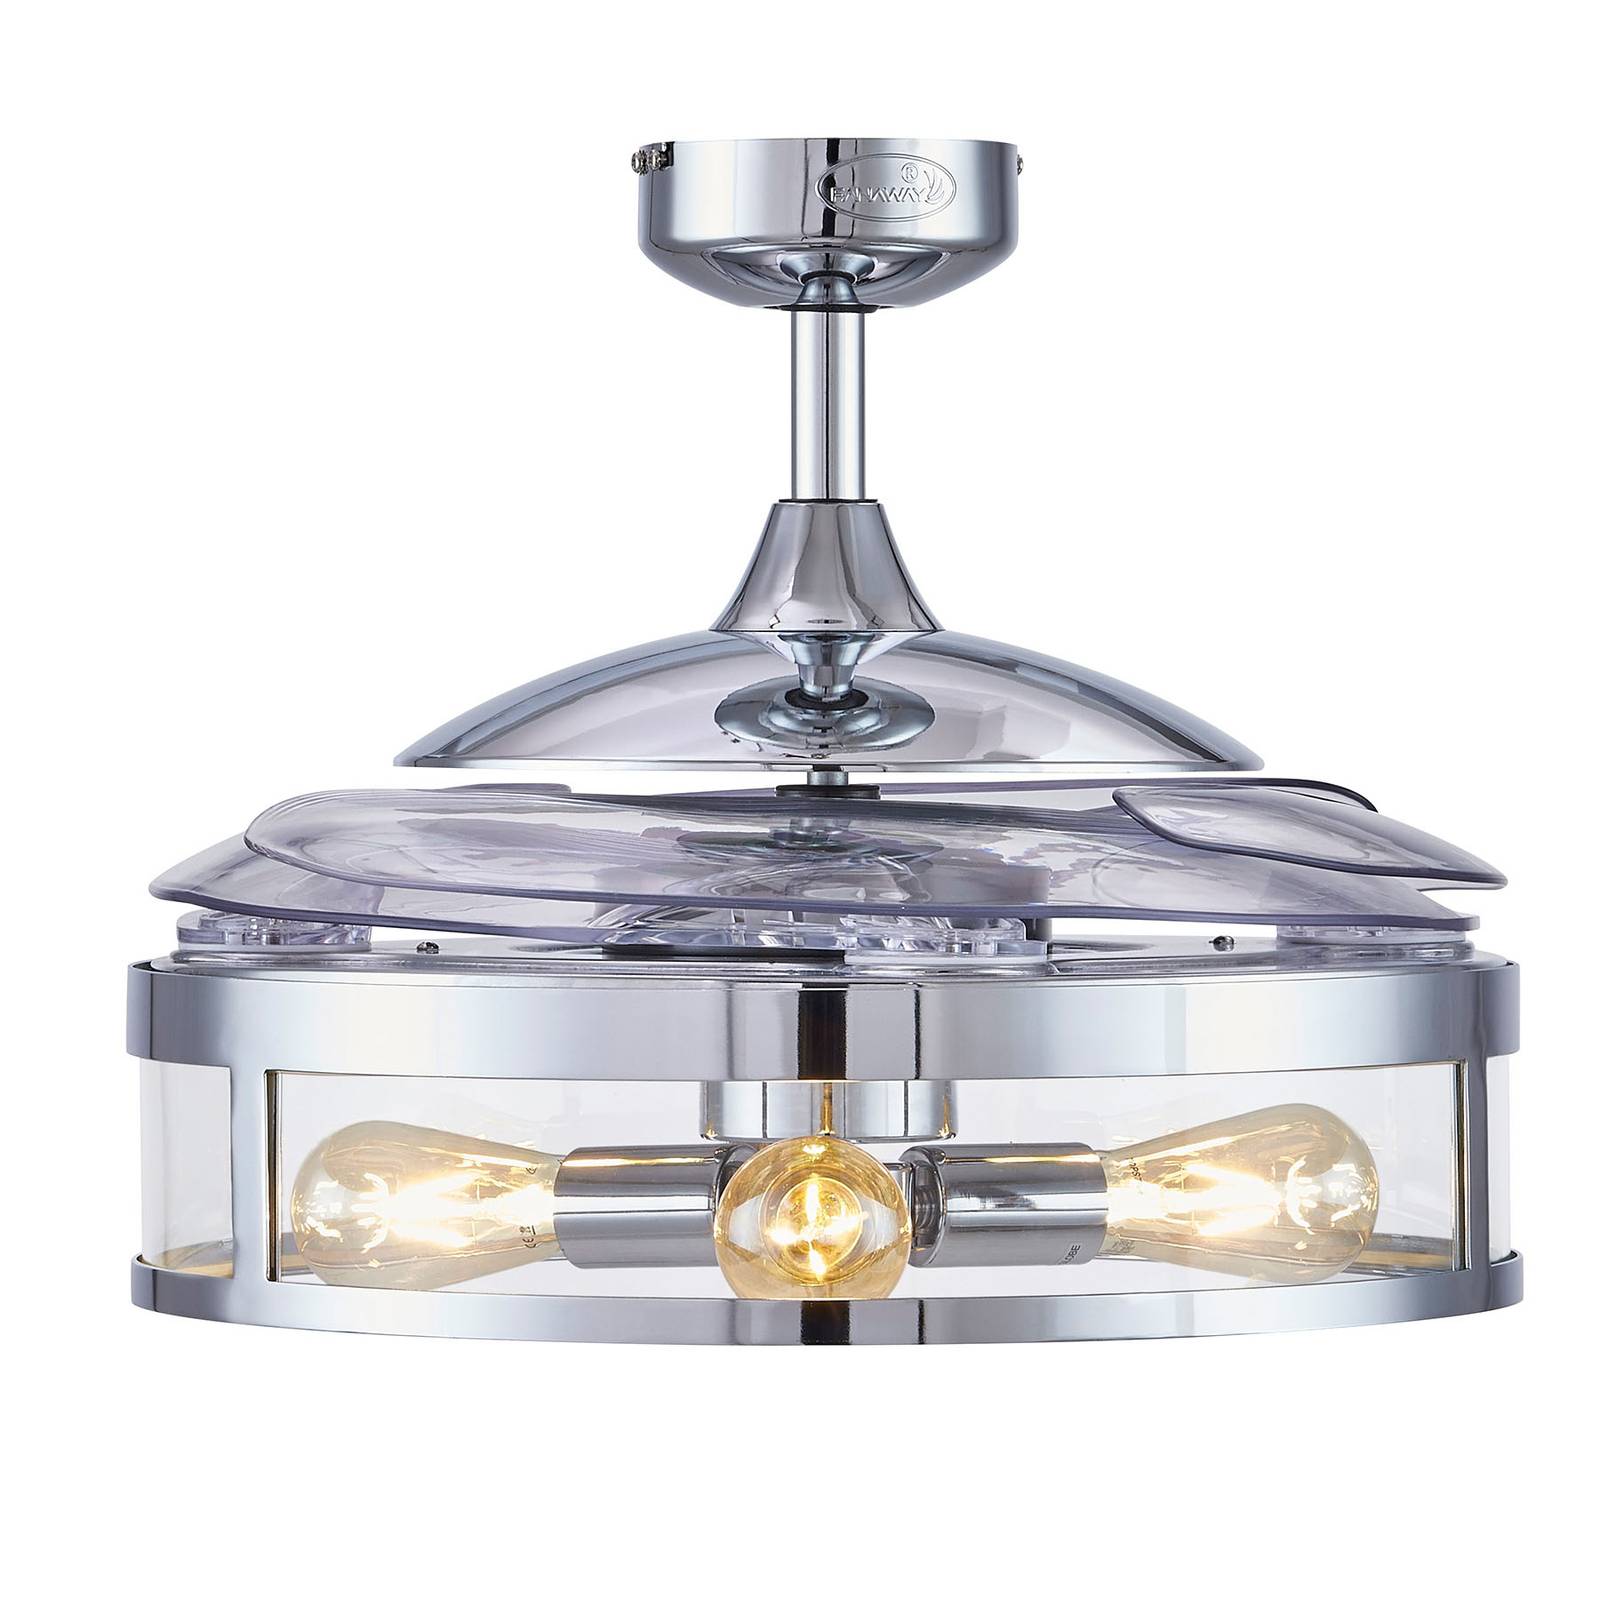 Image of Beacon Lighting Ventilateur plafond Fanaway Classic lumière chromé 9333509119388